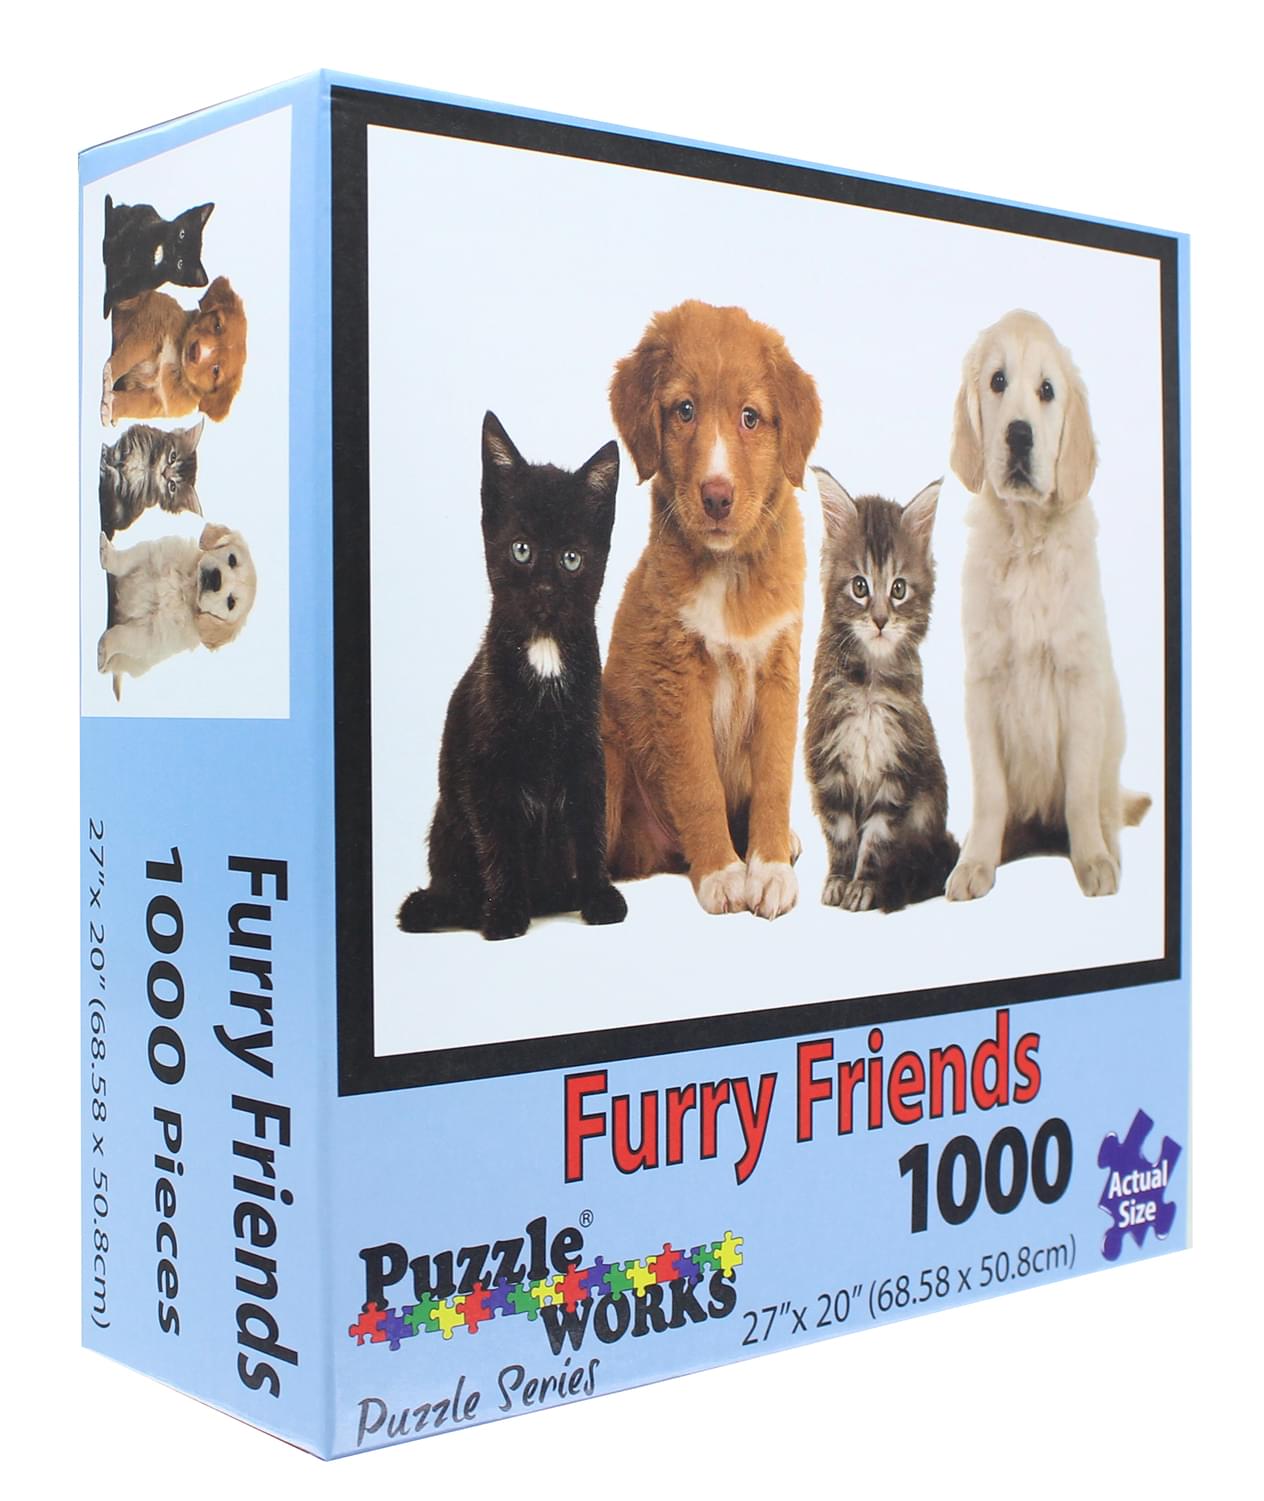 PuzzleWorks 1000 Piece Jigsaw Puzzle | Furry Friend